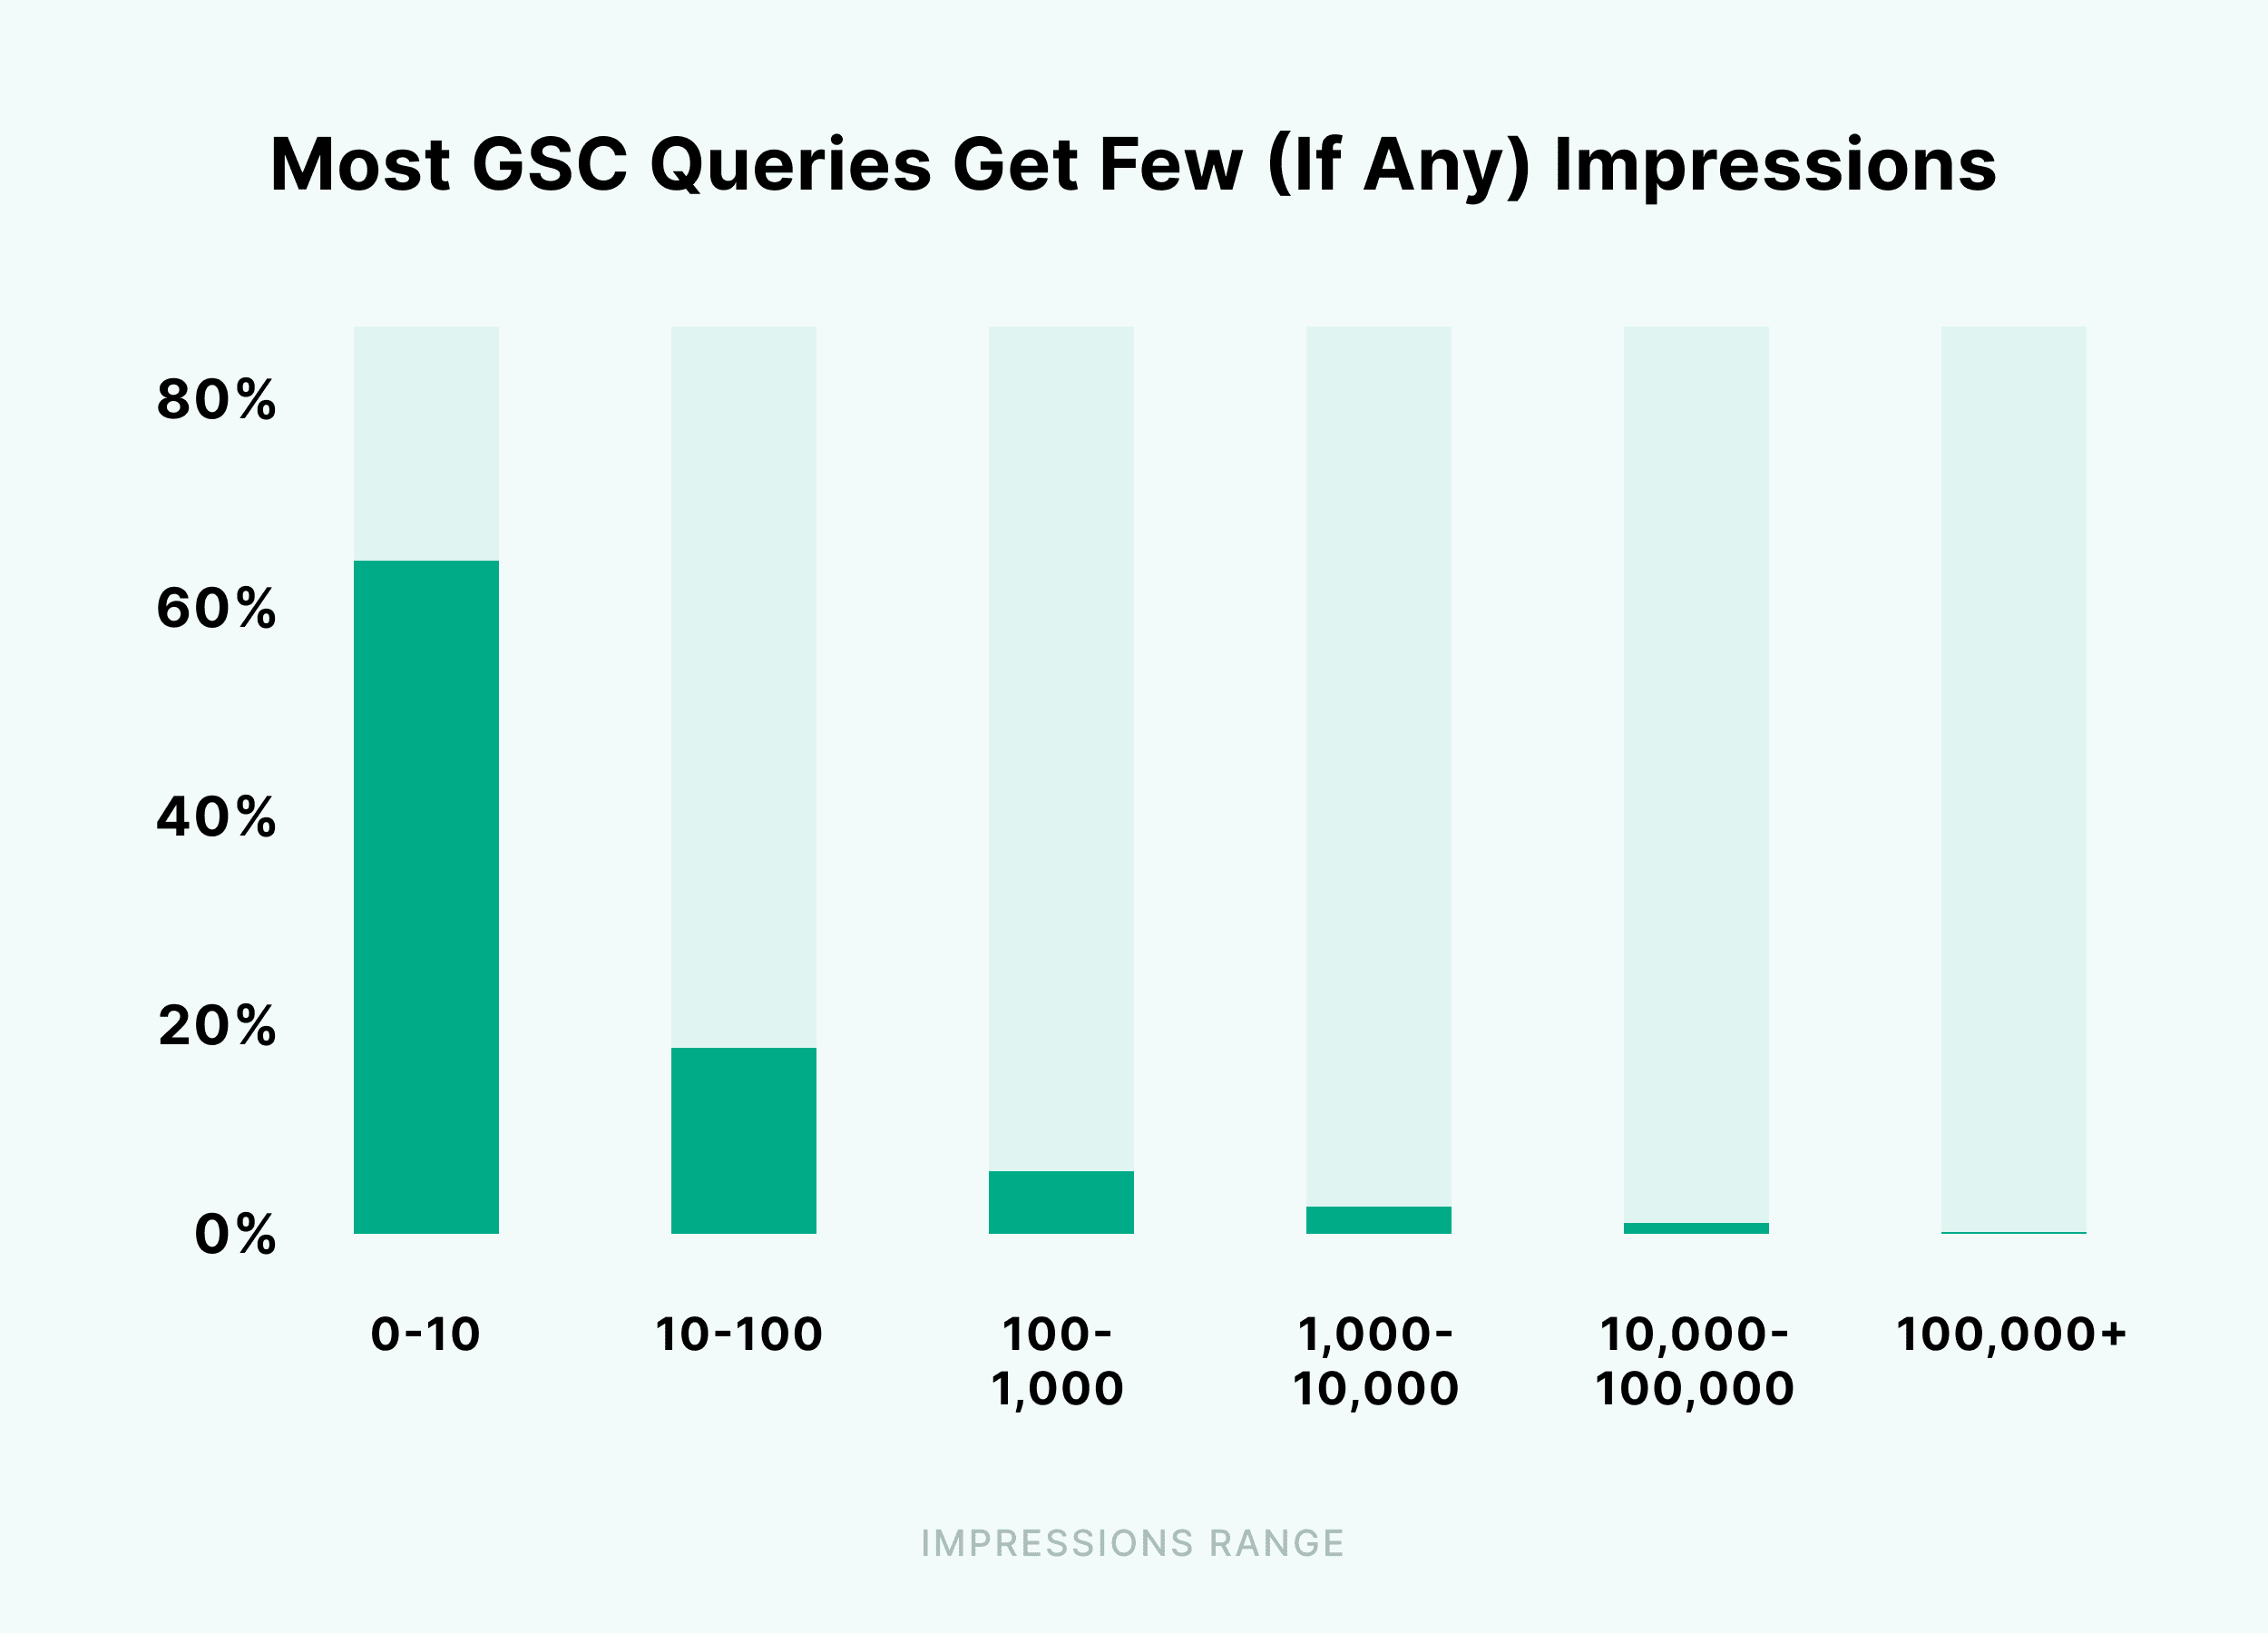 Most GSC queries get few impressions